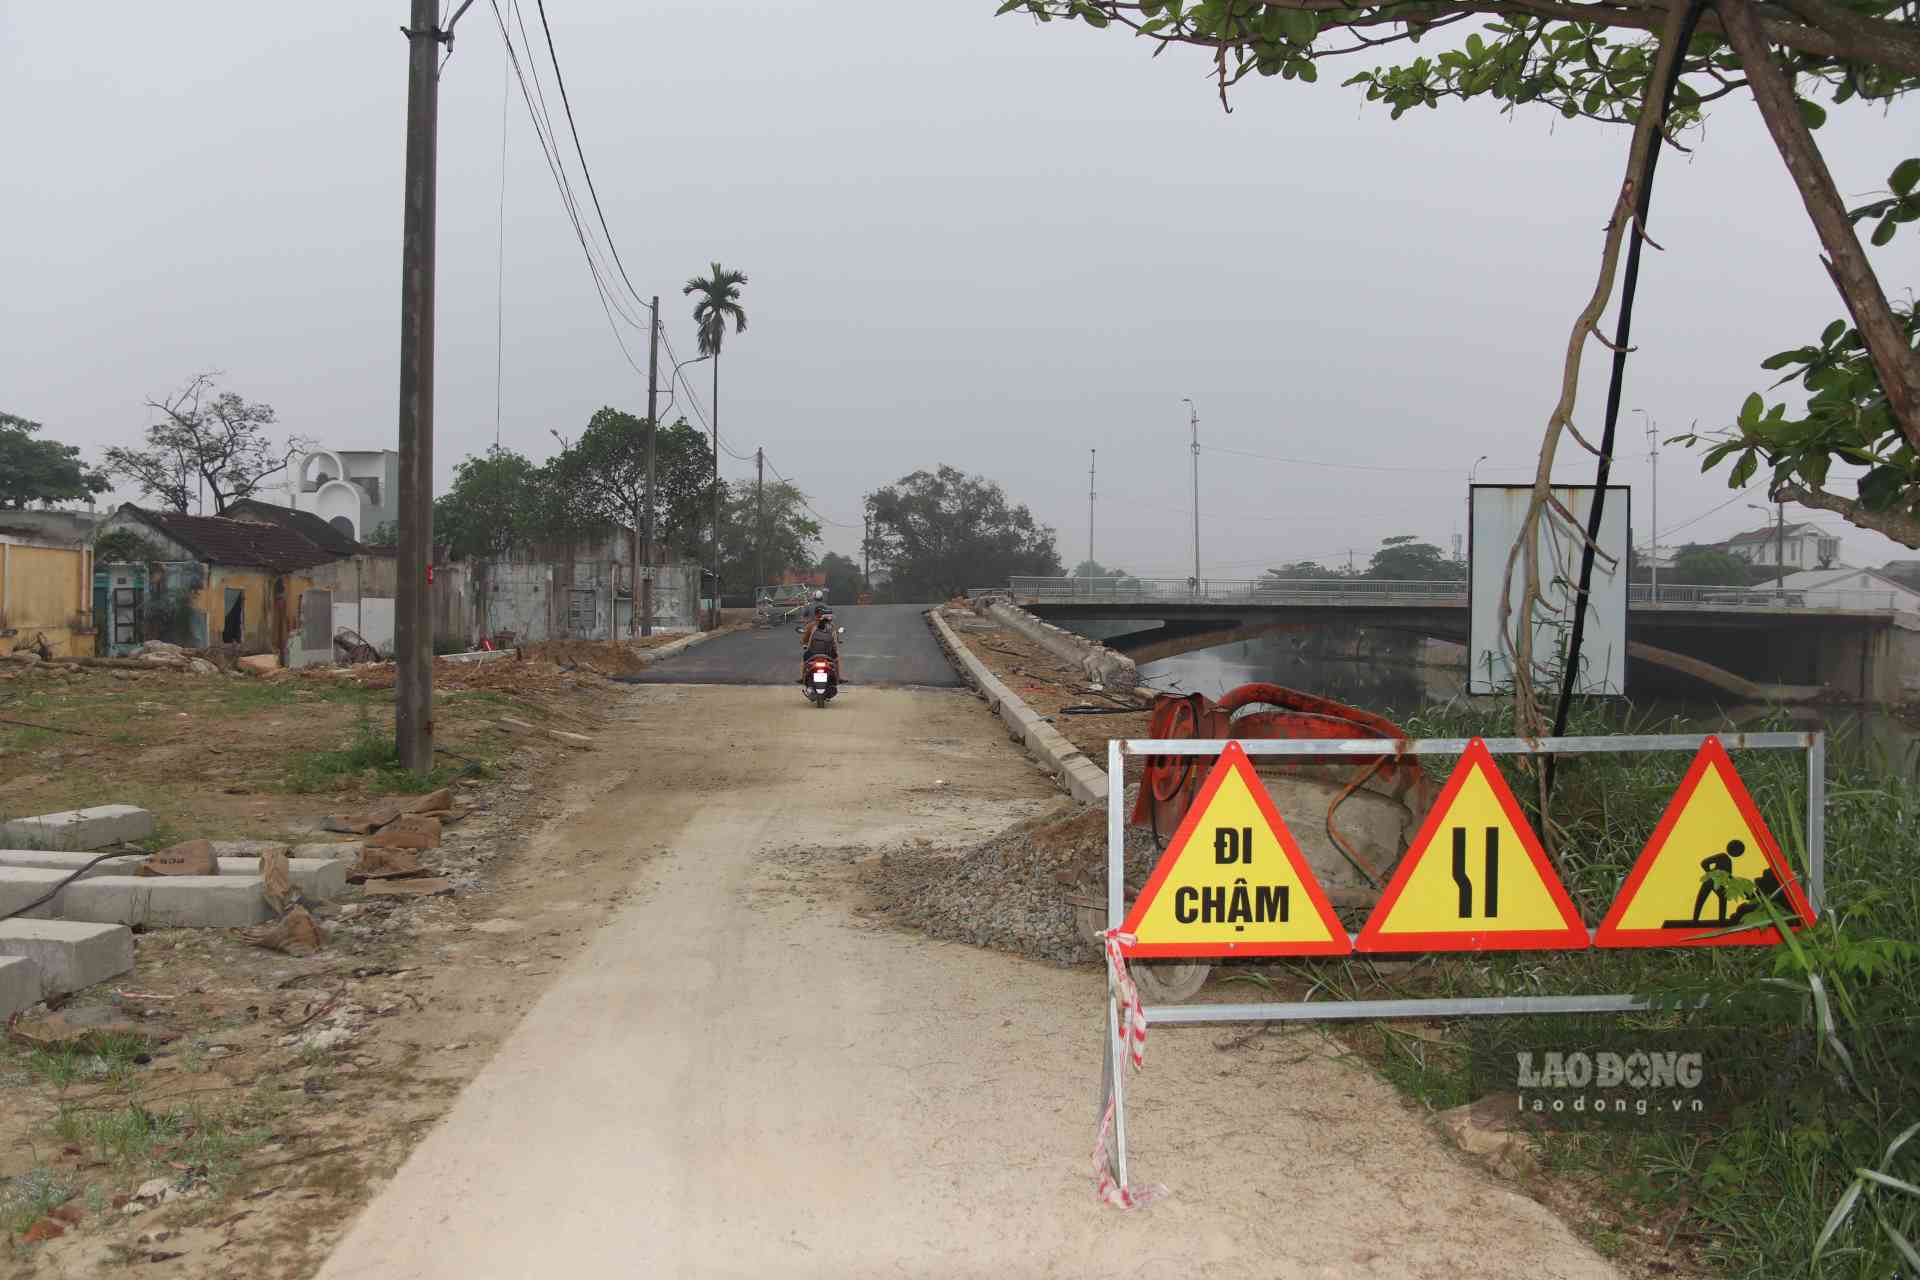 Nguyên nhân dẫn đến sự trì trệ của dự án đó là đơn vị thi công thiết kế hệ thống đường dẫn hai đầu cầu thiếu thực tế; cao hơn đoạn đường tiếp giáp hai đầu cầu là đường Tôn Quang Phiệt và đường Hải Triều.